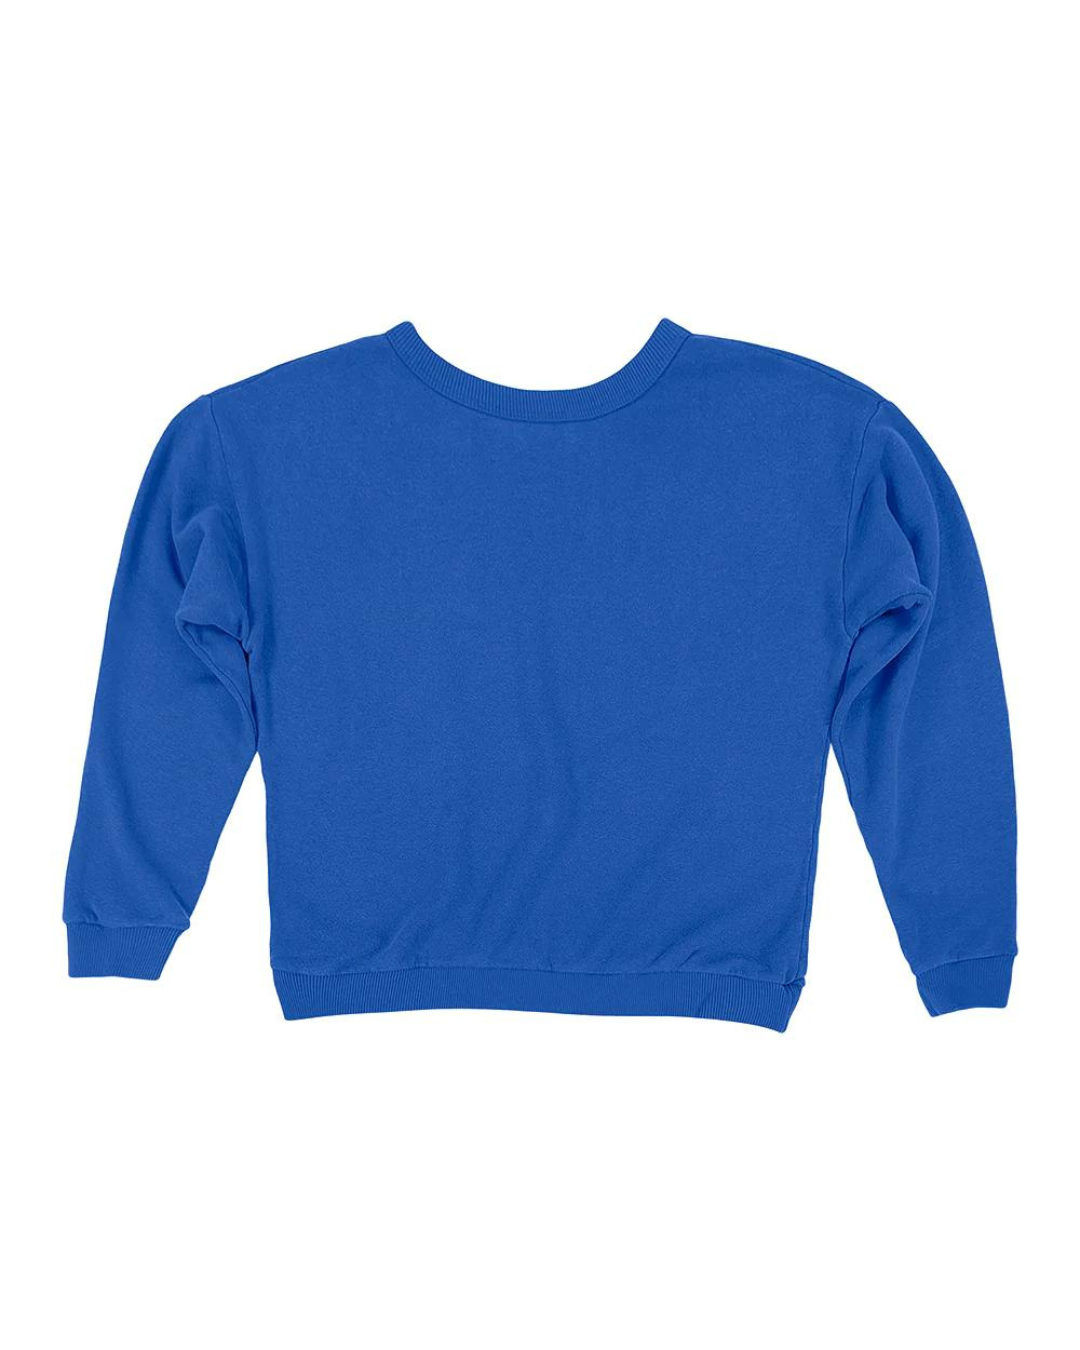 Crux Sweatshirt